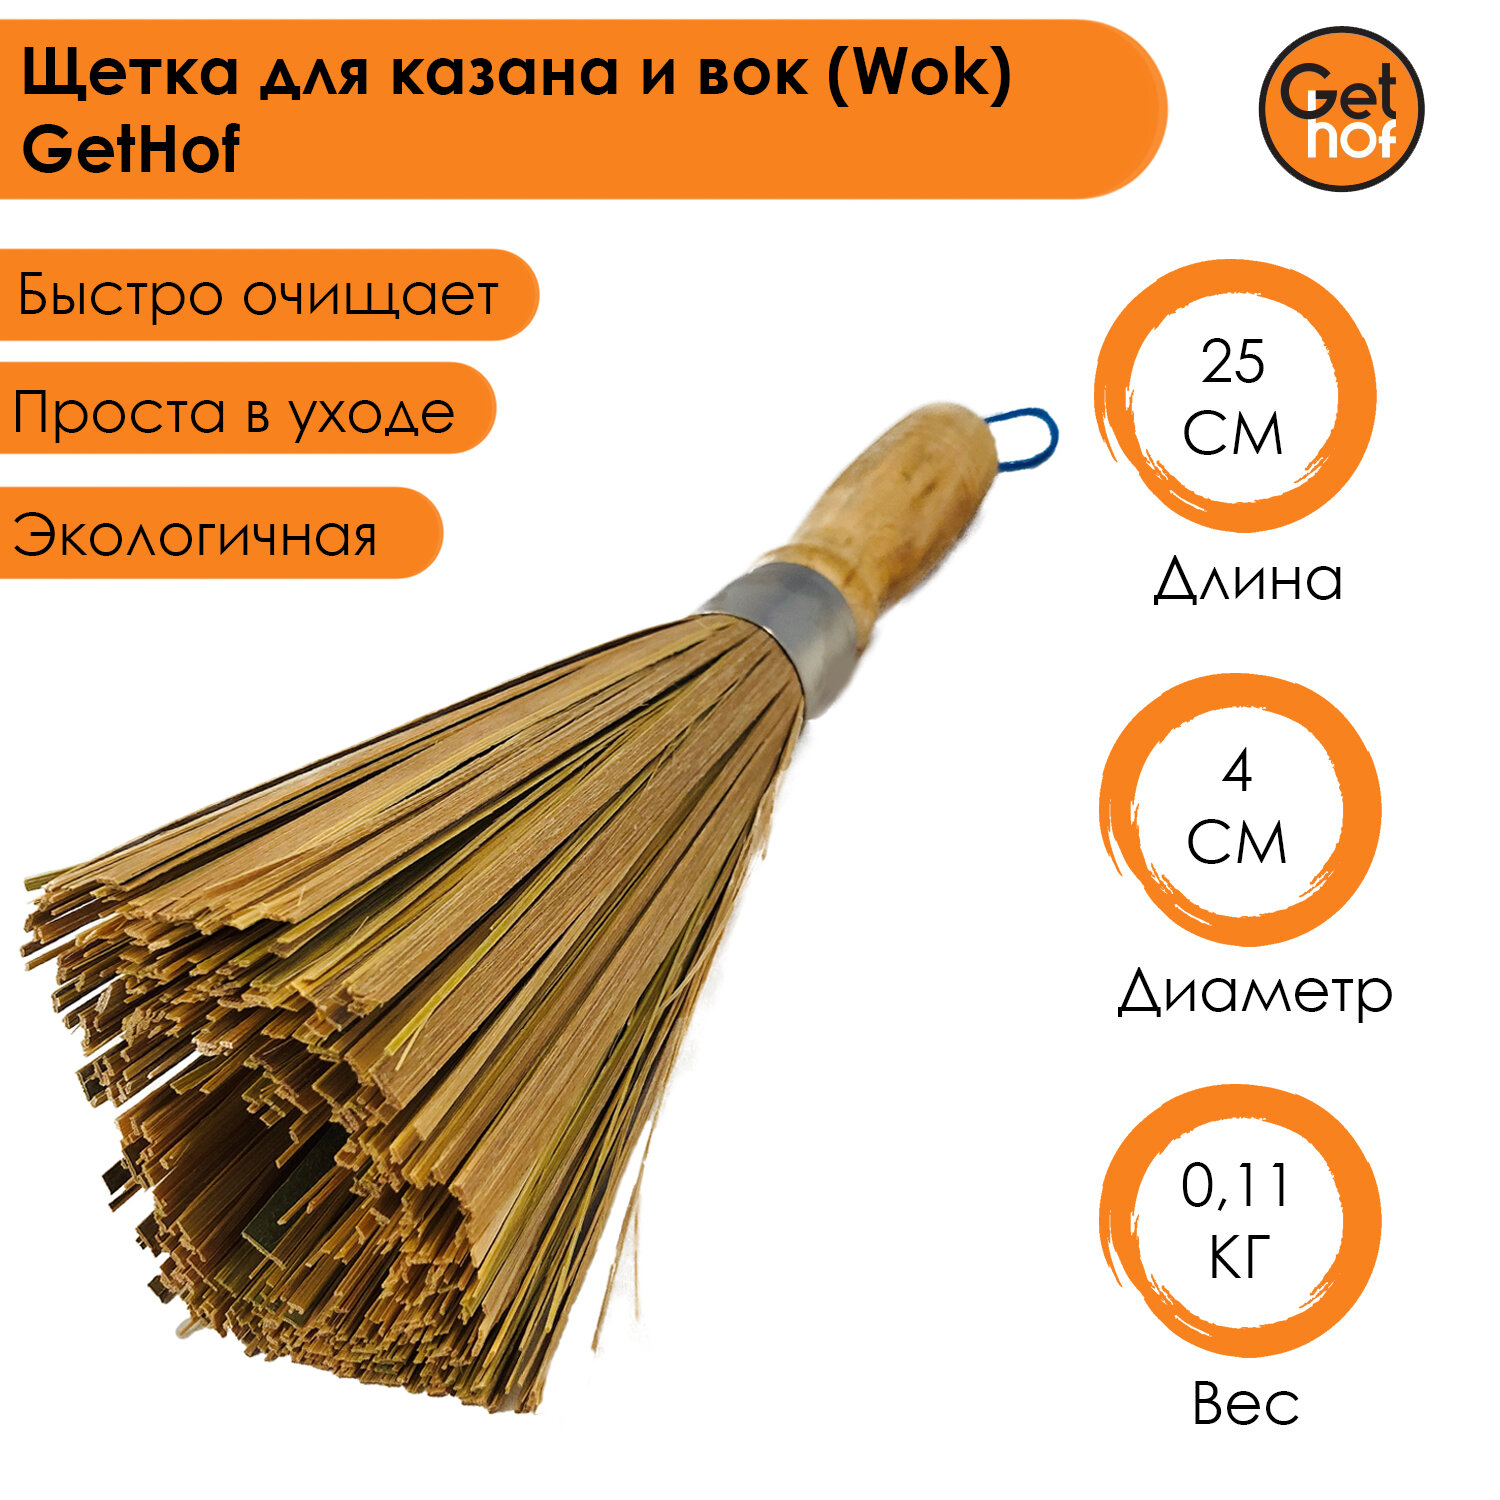 Щетка для казана и вок (Wok) GetHof из бамбука 25 см